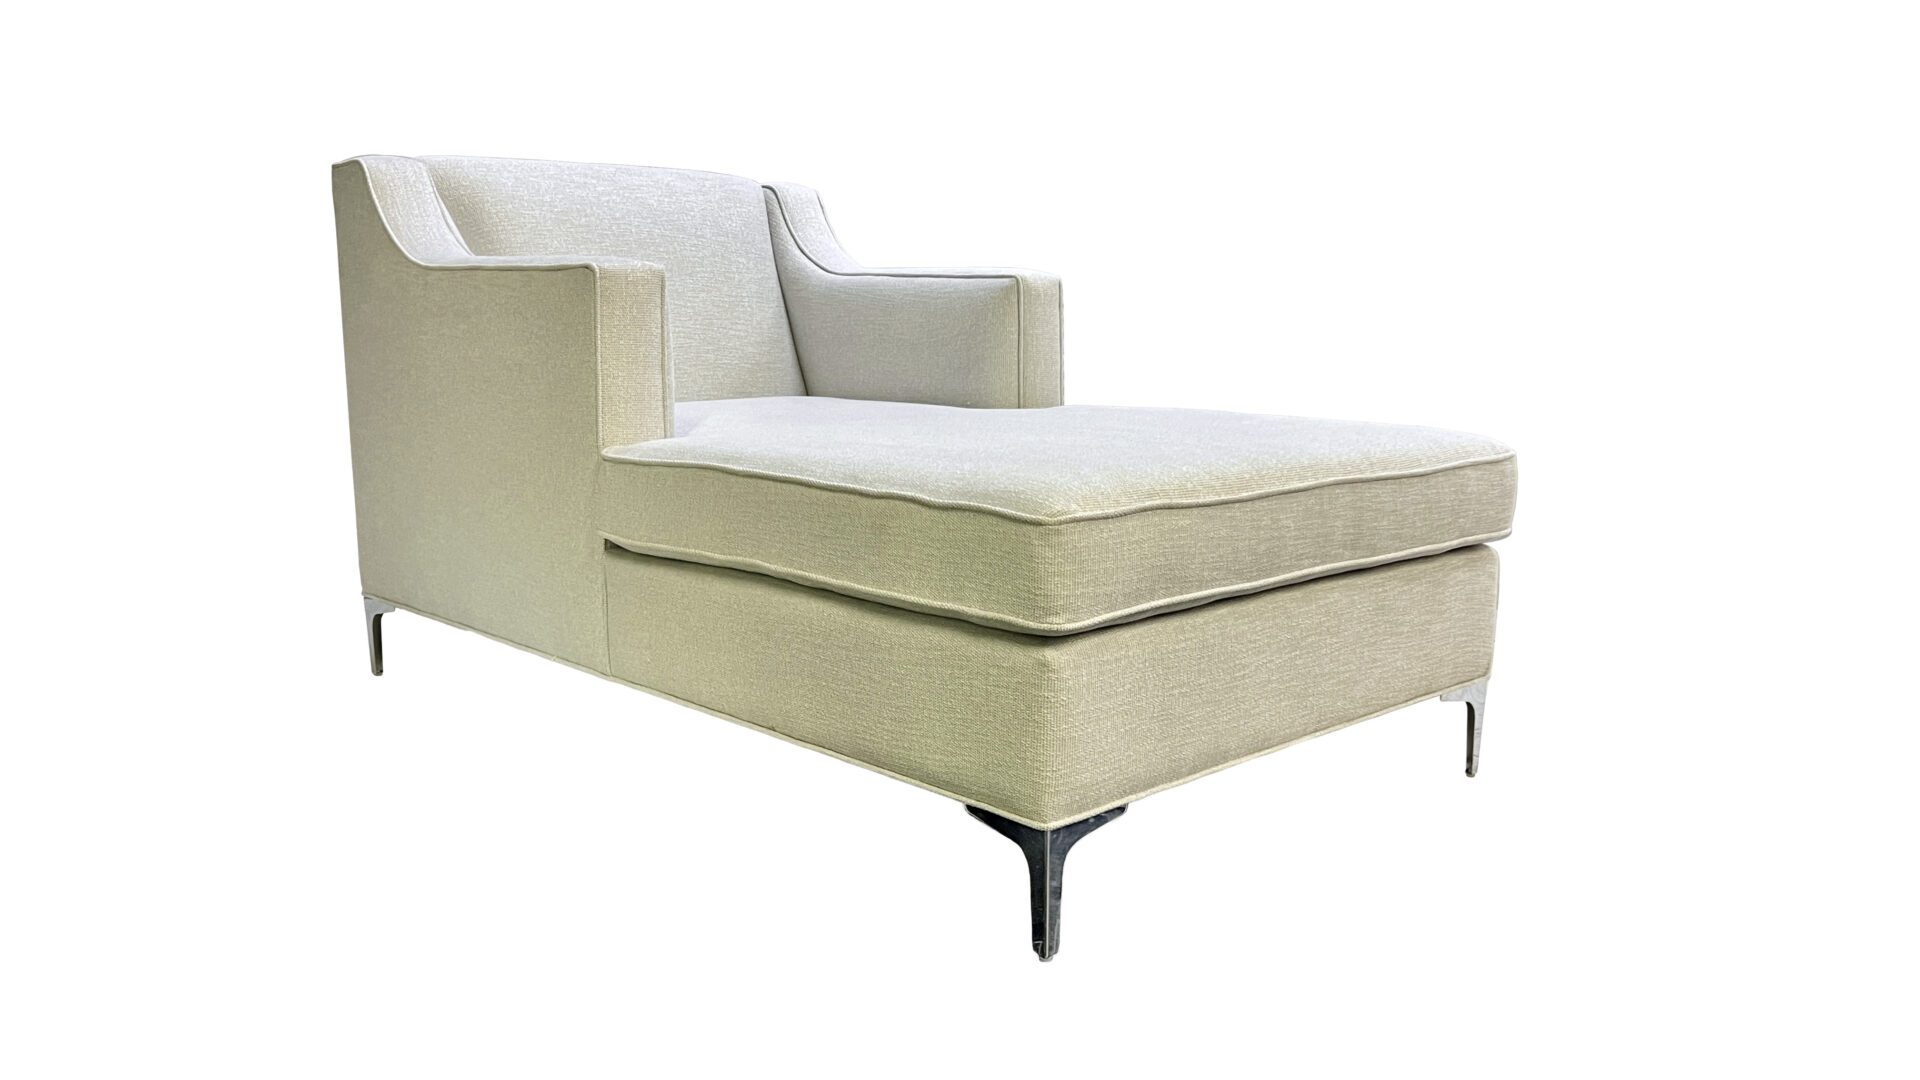 Elena-chaise-blend-home-furnishings